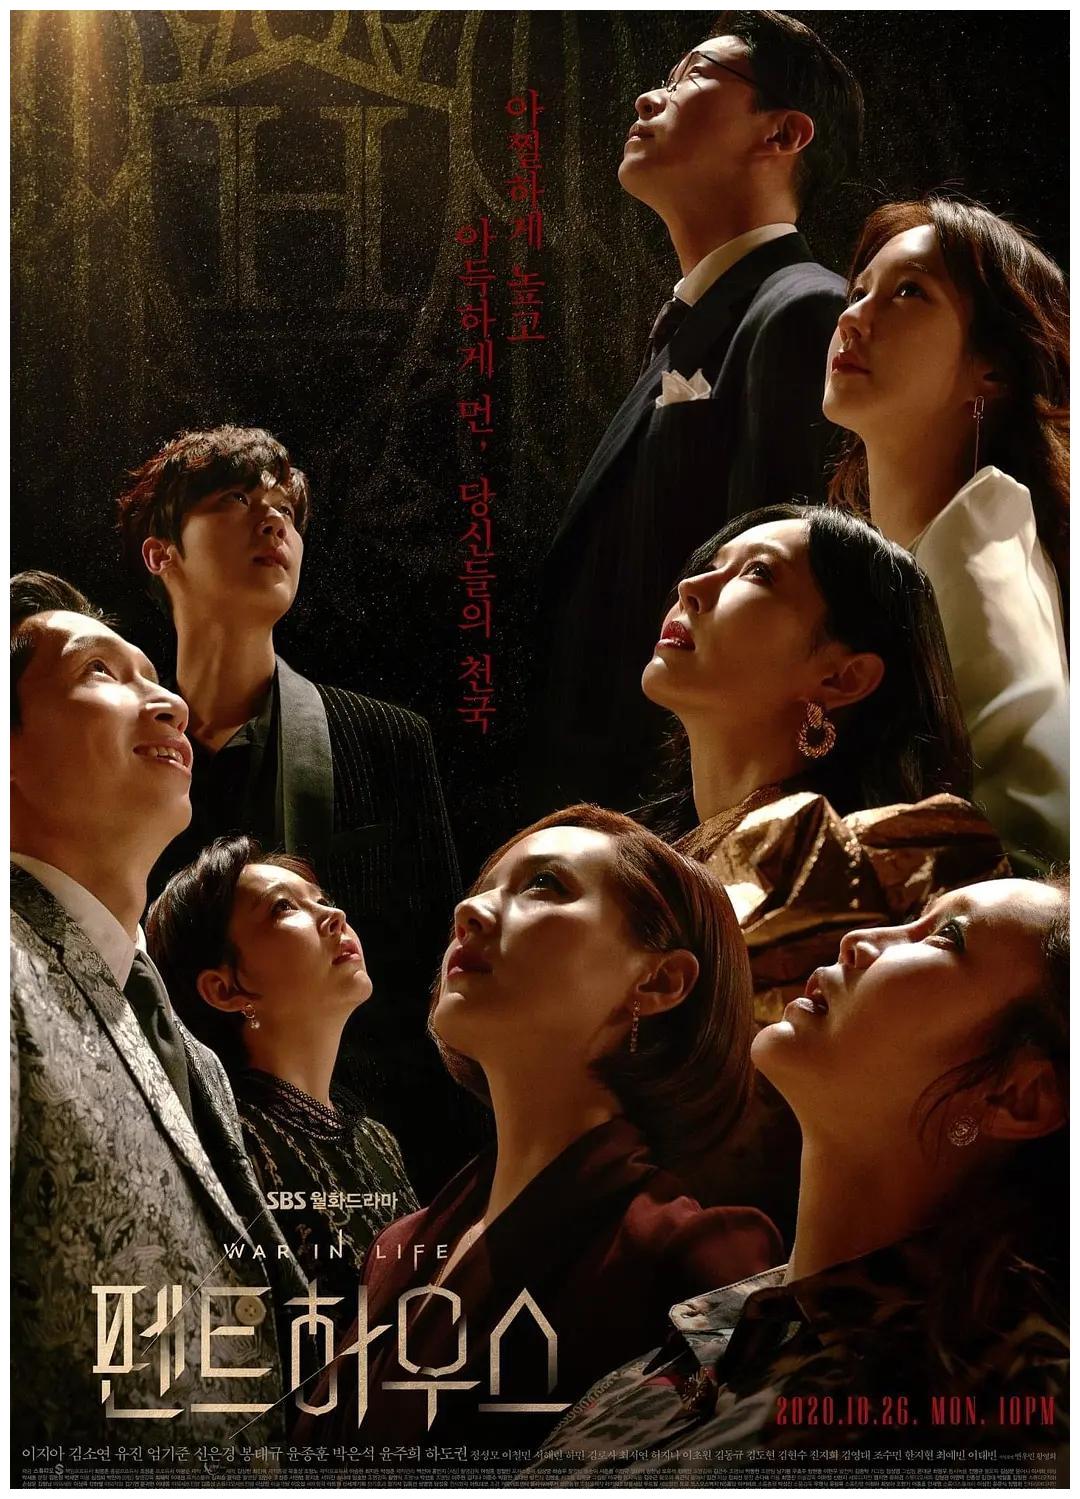 Teaser trailer #5 for tvN drama series “Flower of Evil” | AsianWiki Blog